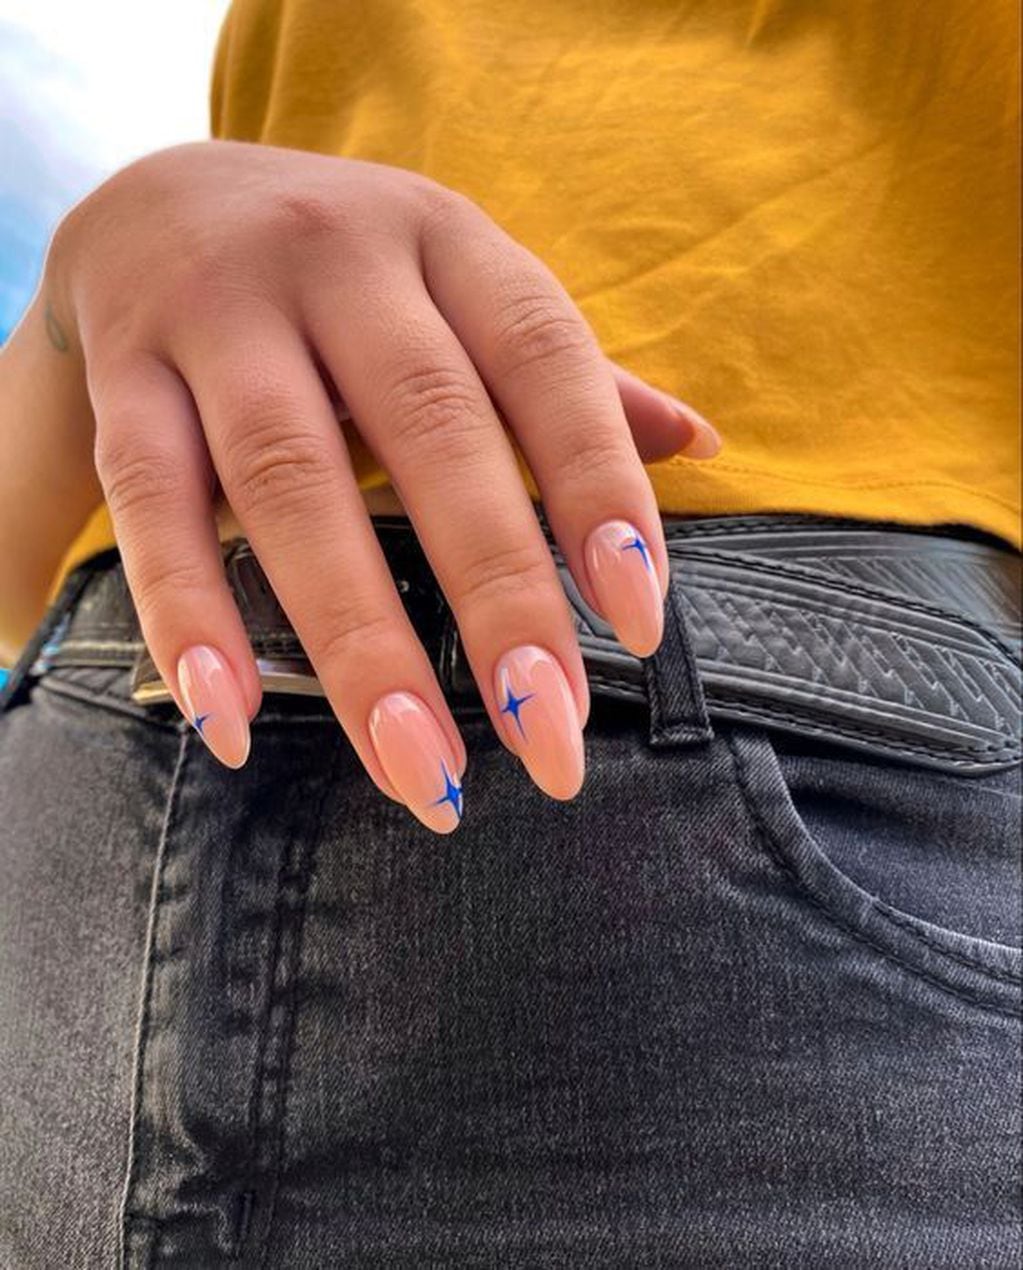 El nail art minimalista se trata de hacer pequeñas intervenciones en las uñas con distintas formas para darles un toque diferente. 